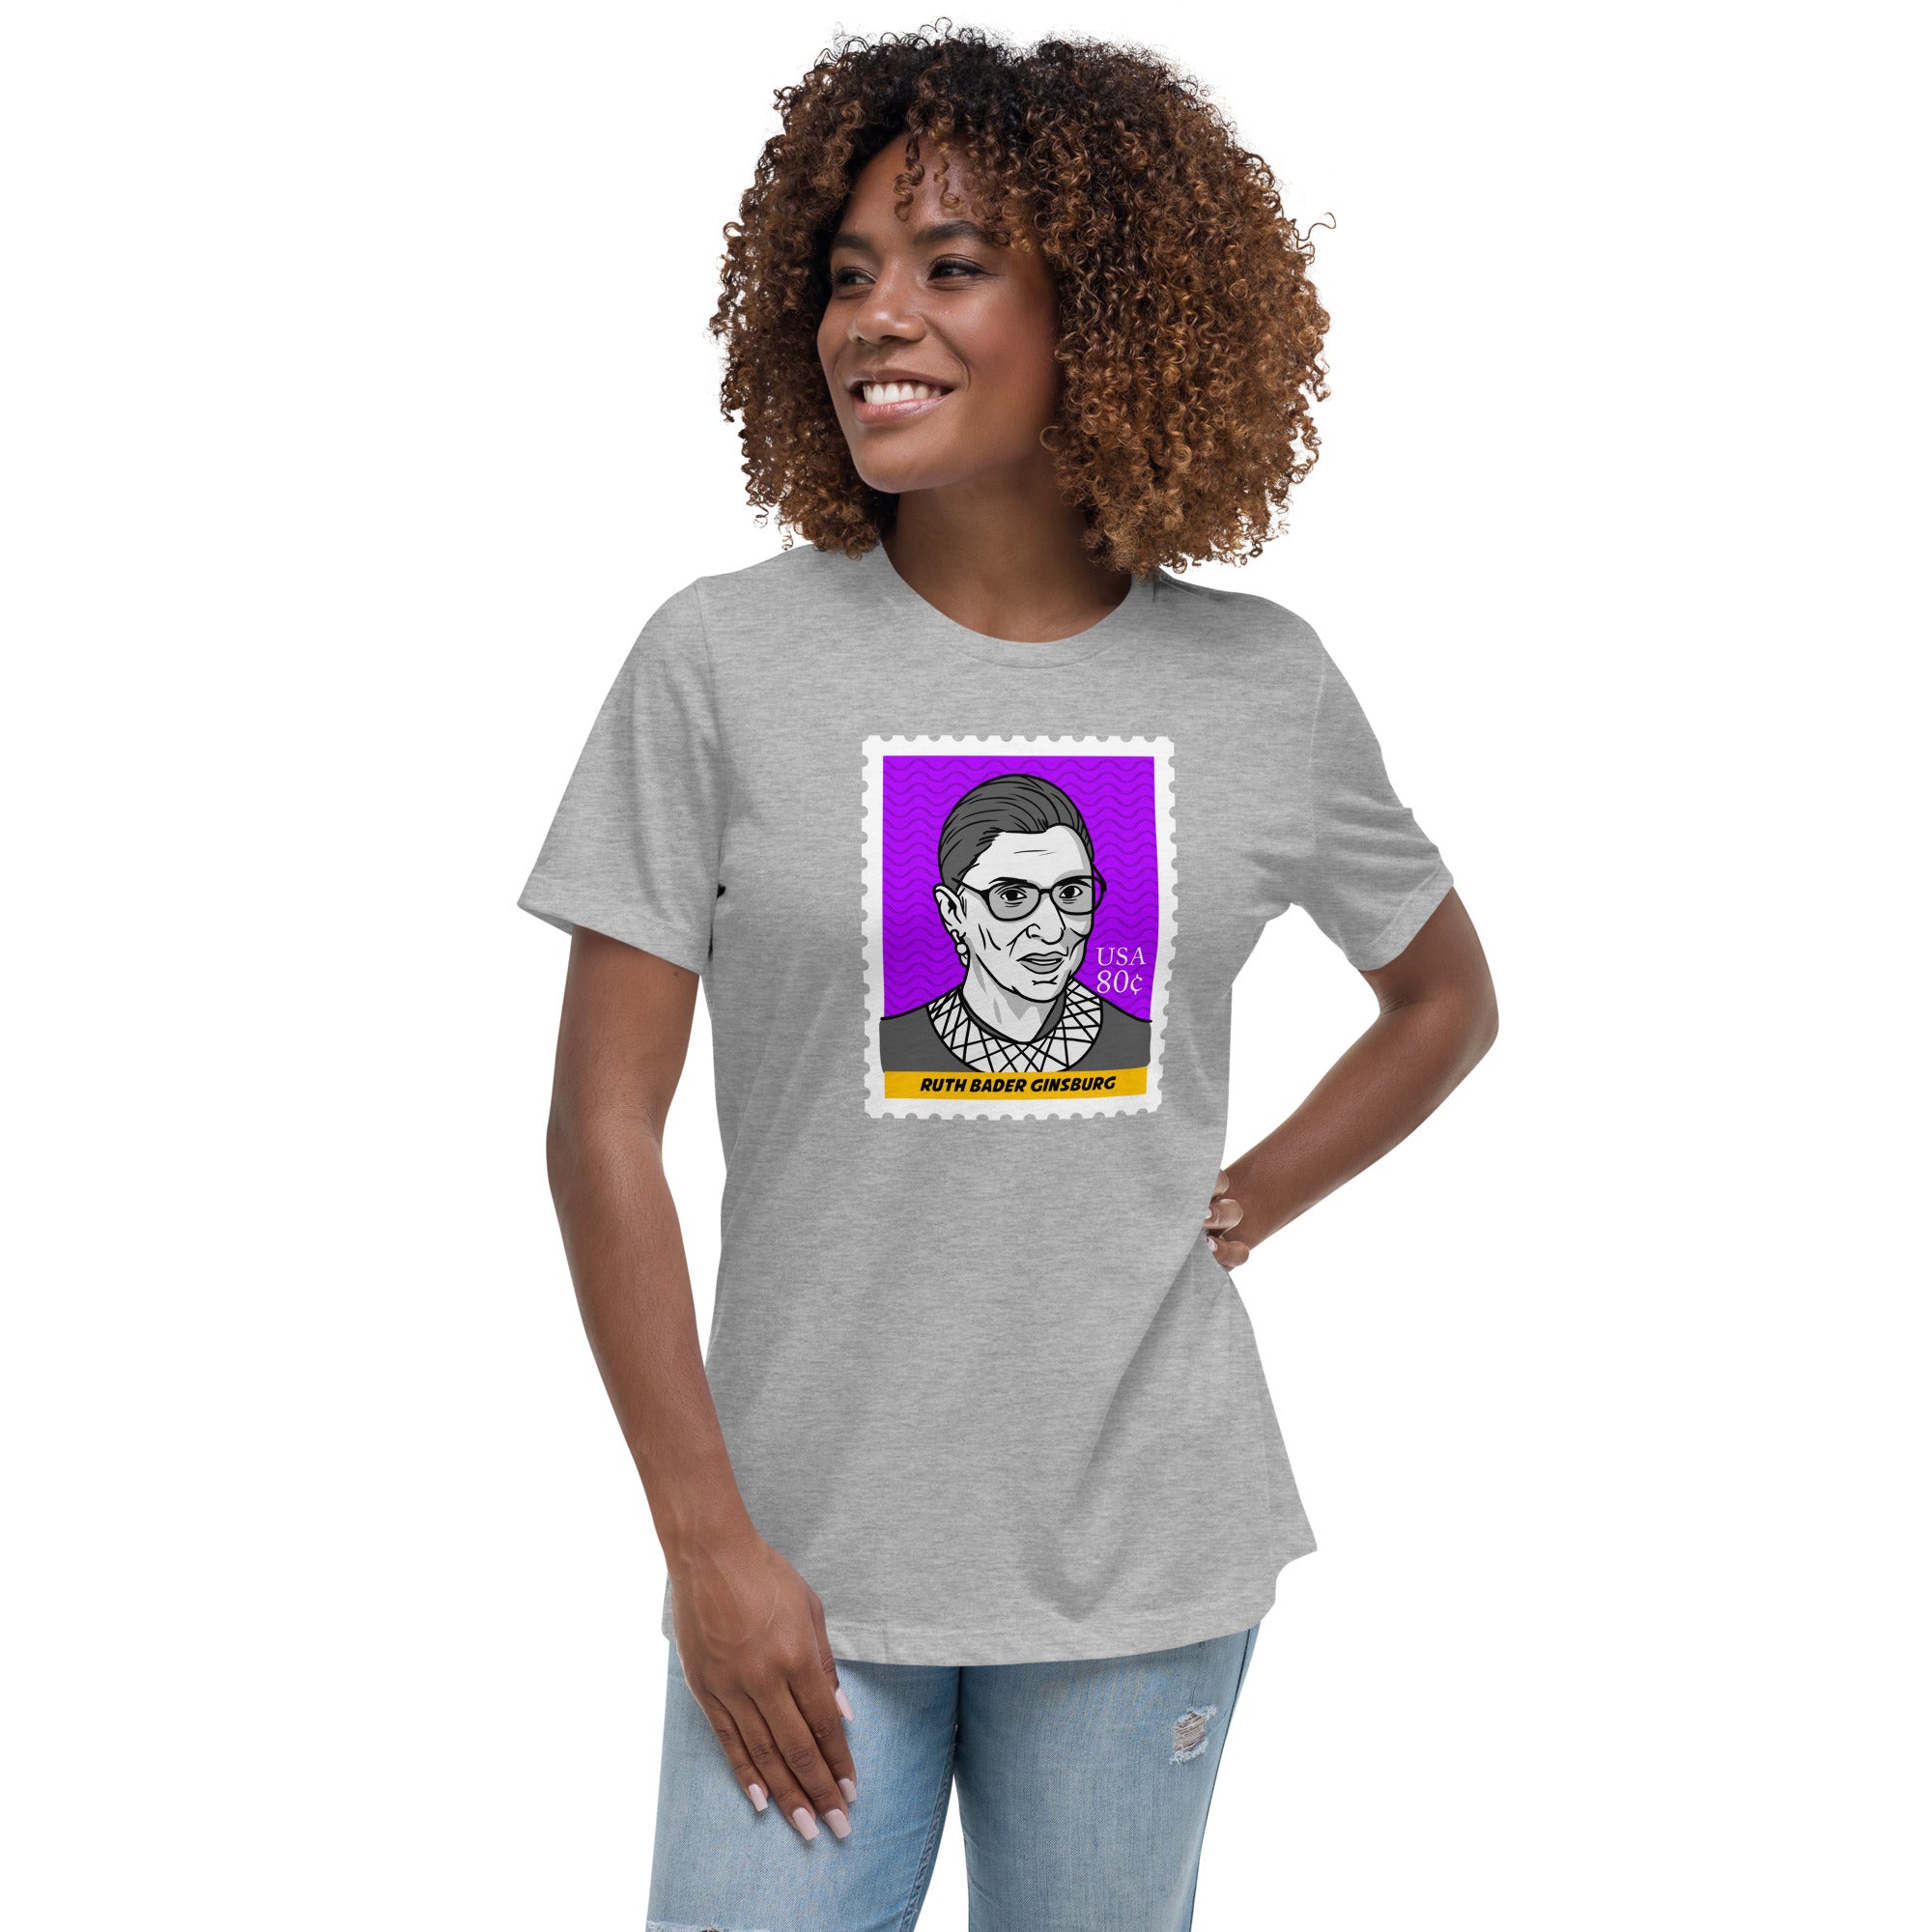 Ruth Bader Ginsburg Custom Relaxed T-Shirt